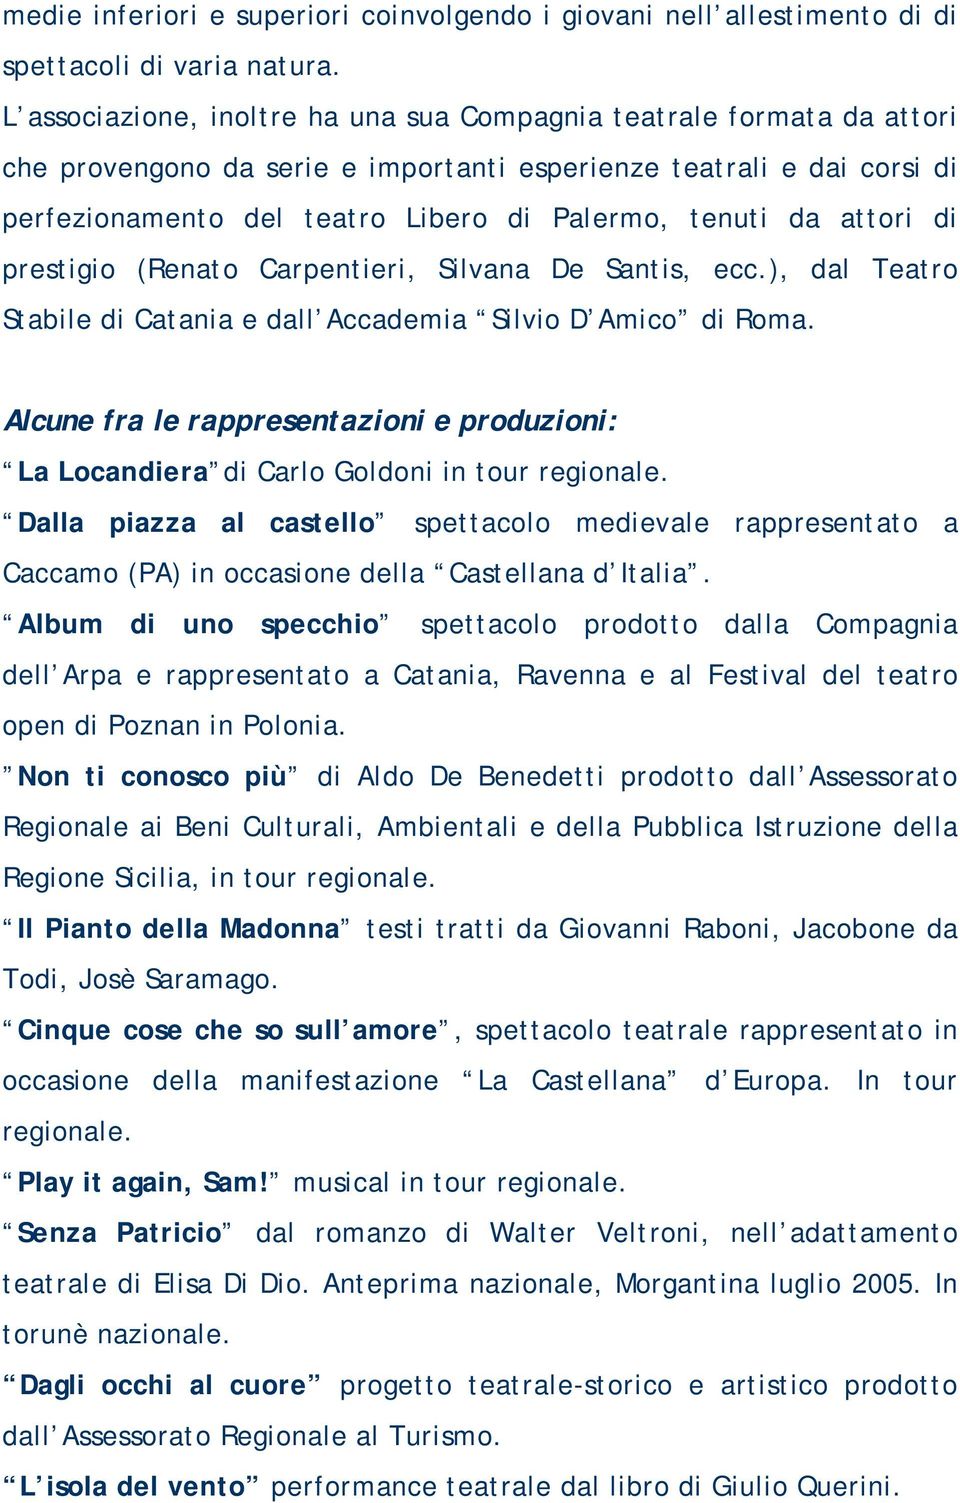 attori di prestigio (Renato Carpentieri, Silvana De Santis, ecc.), dal Teatro Stabile di Catania e dall Accademia Silvio D Amico di Roma.